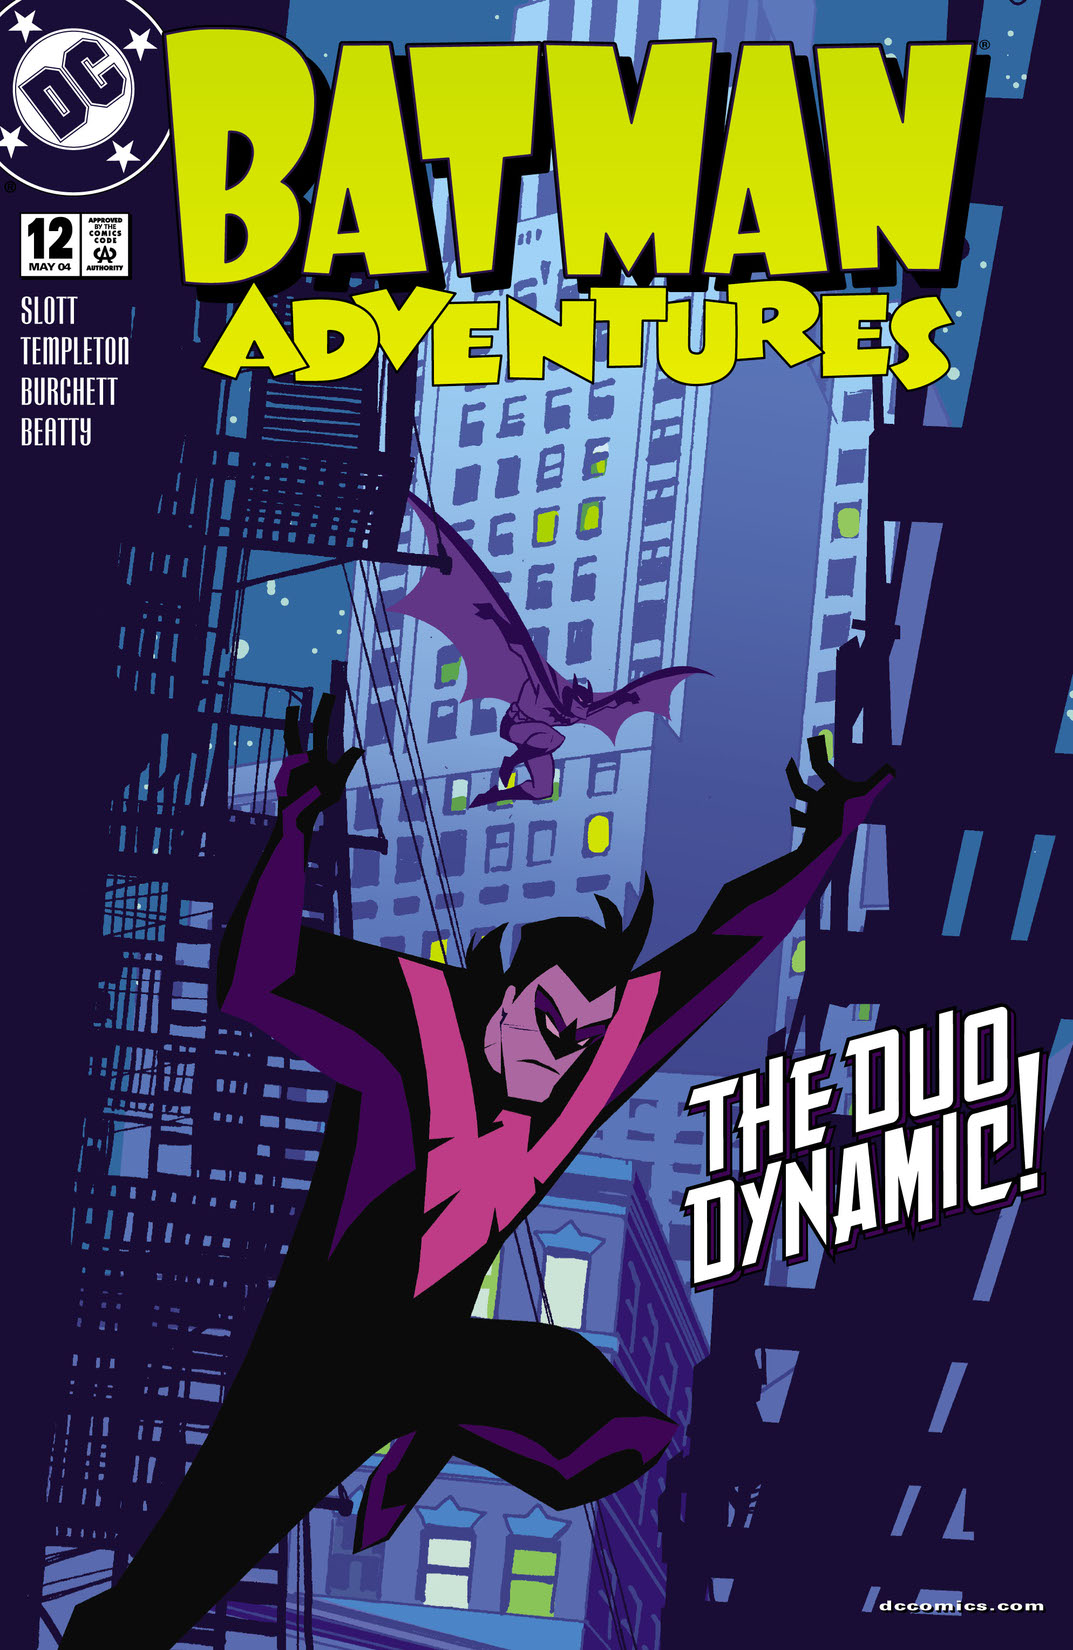 Batman Adventures #12 preview images